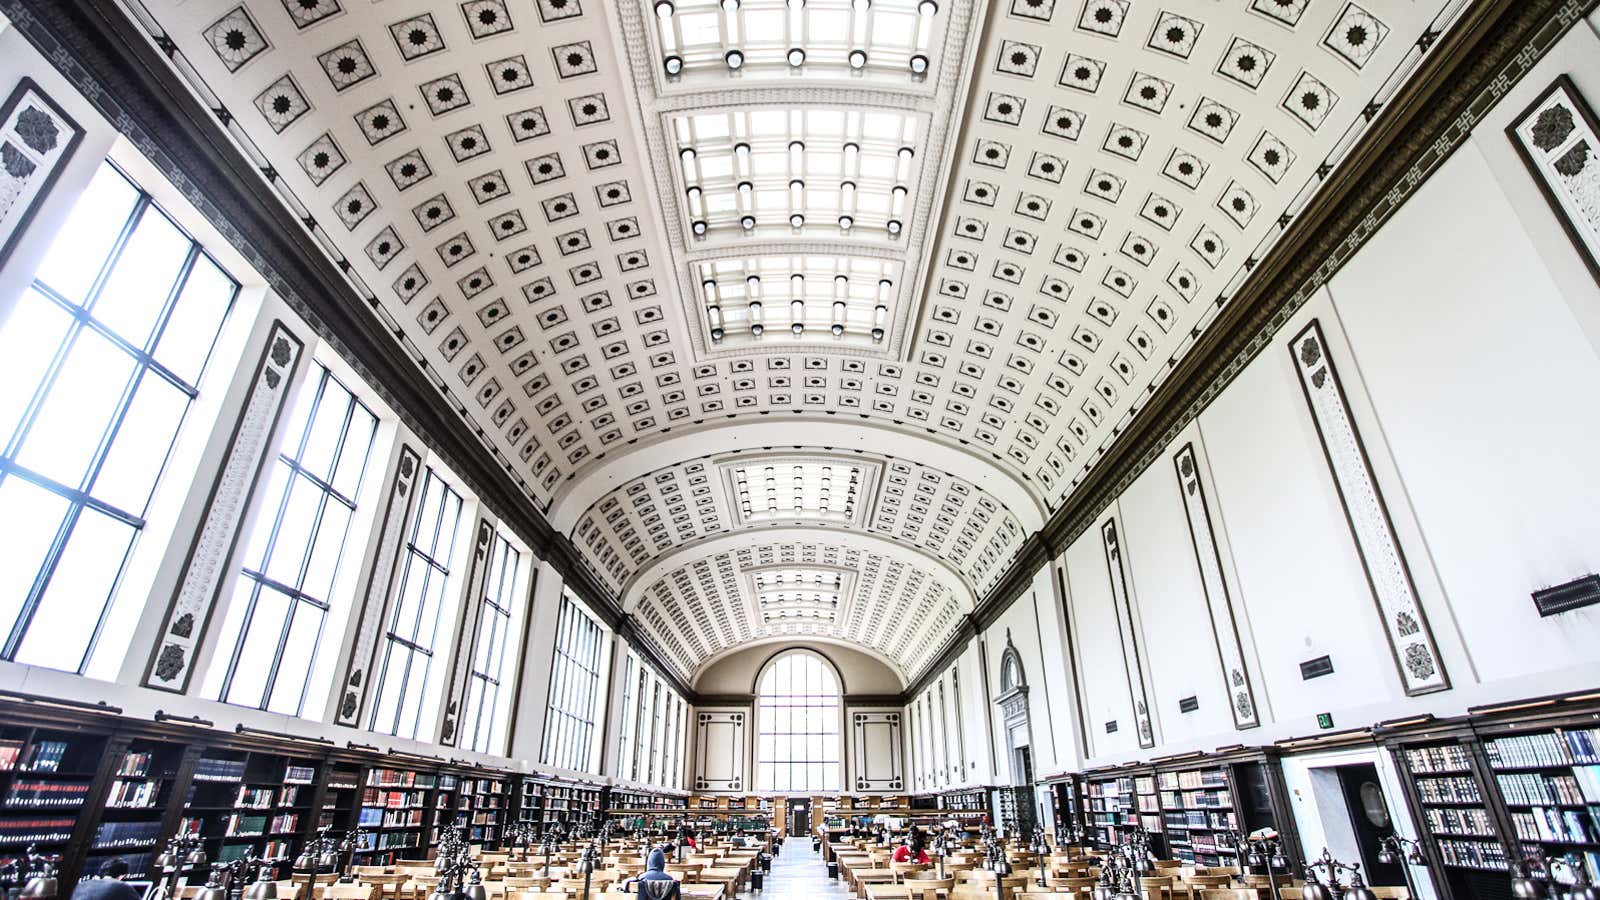 Doe Memorial Library at the University of California-Berkeley.